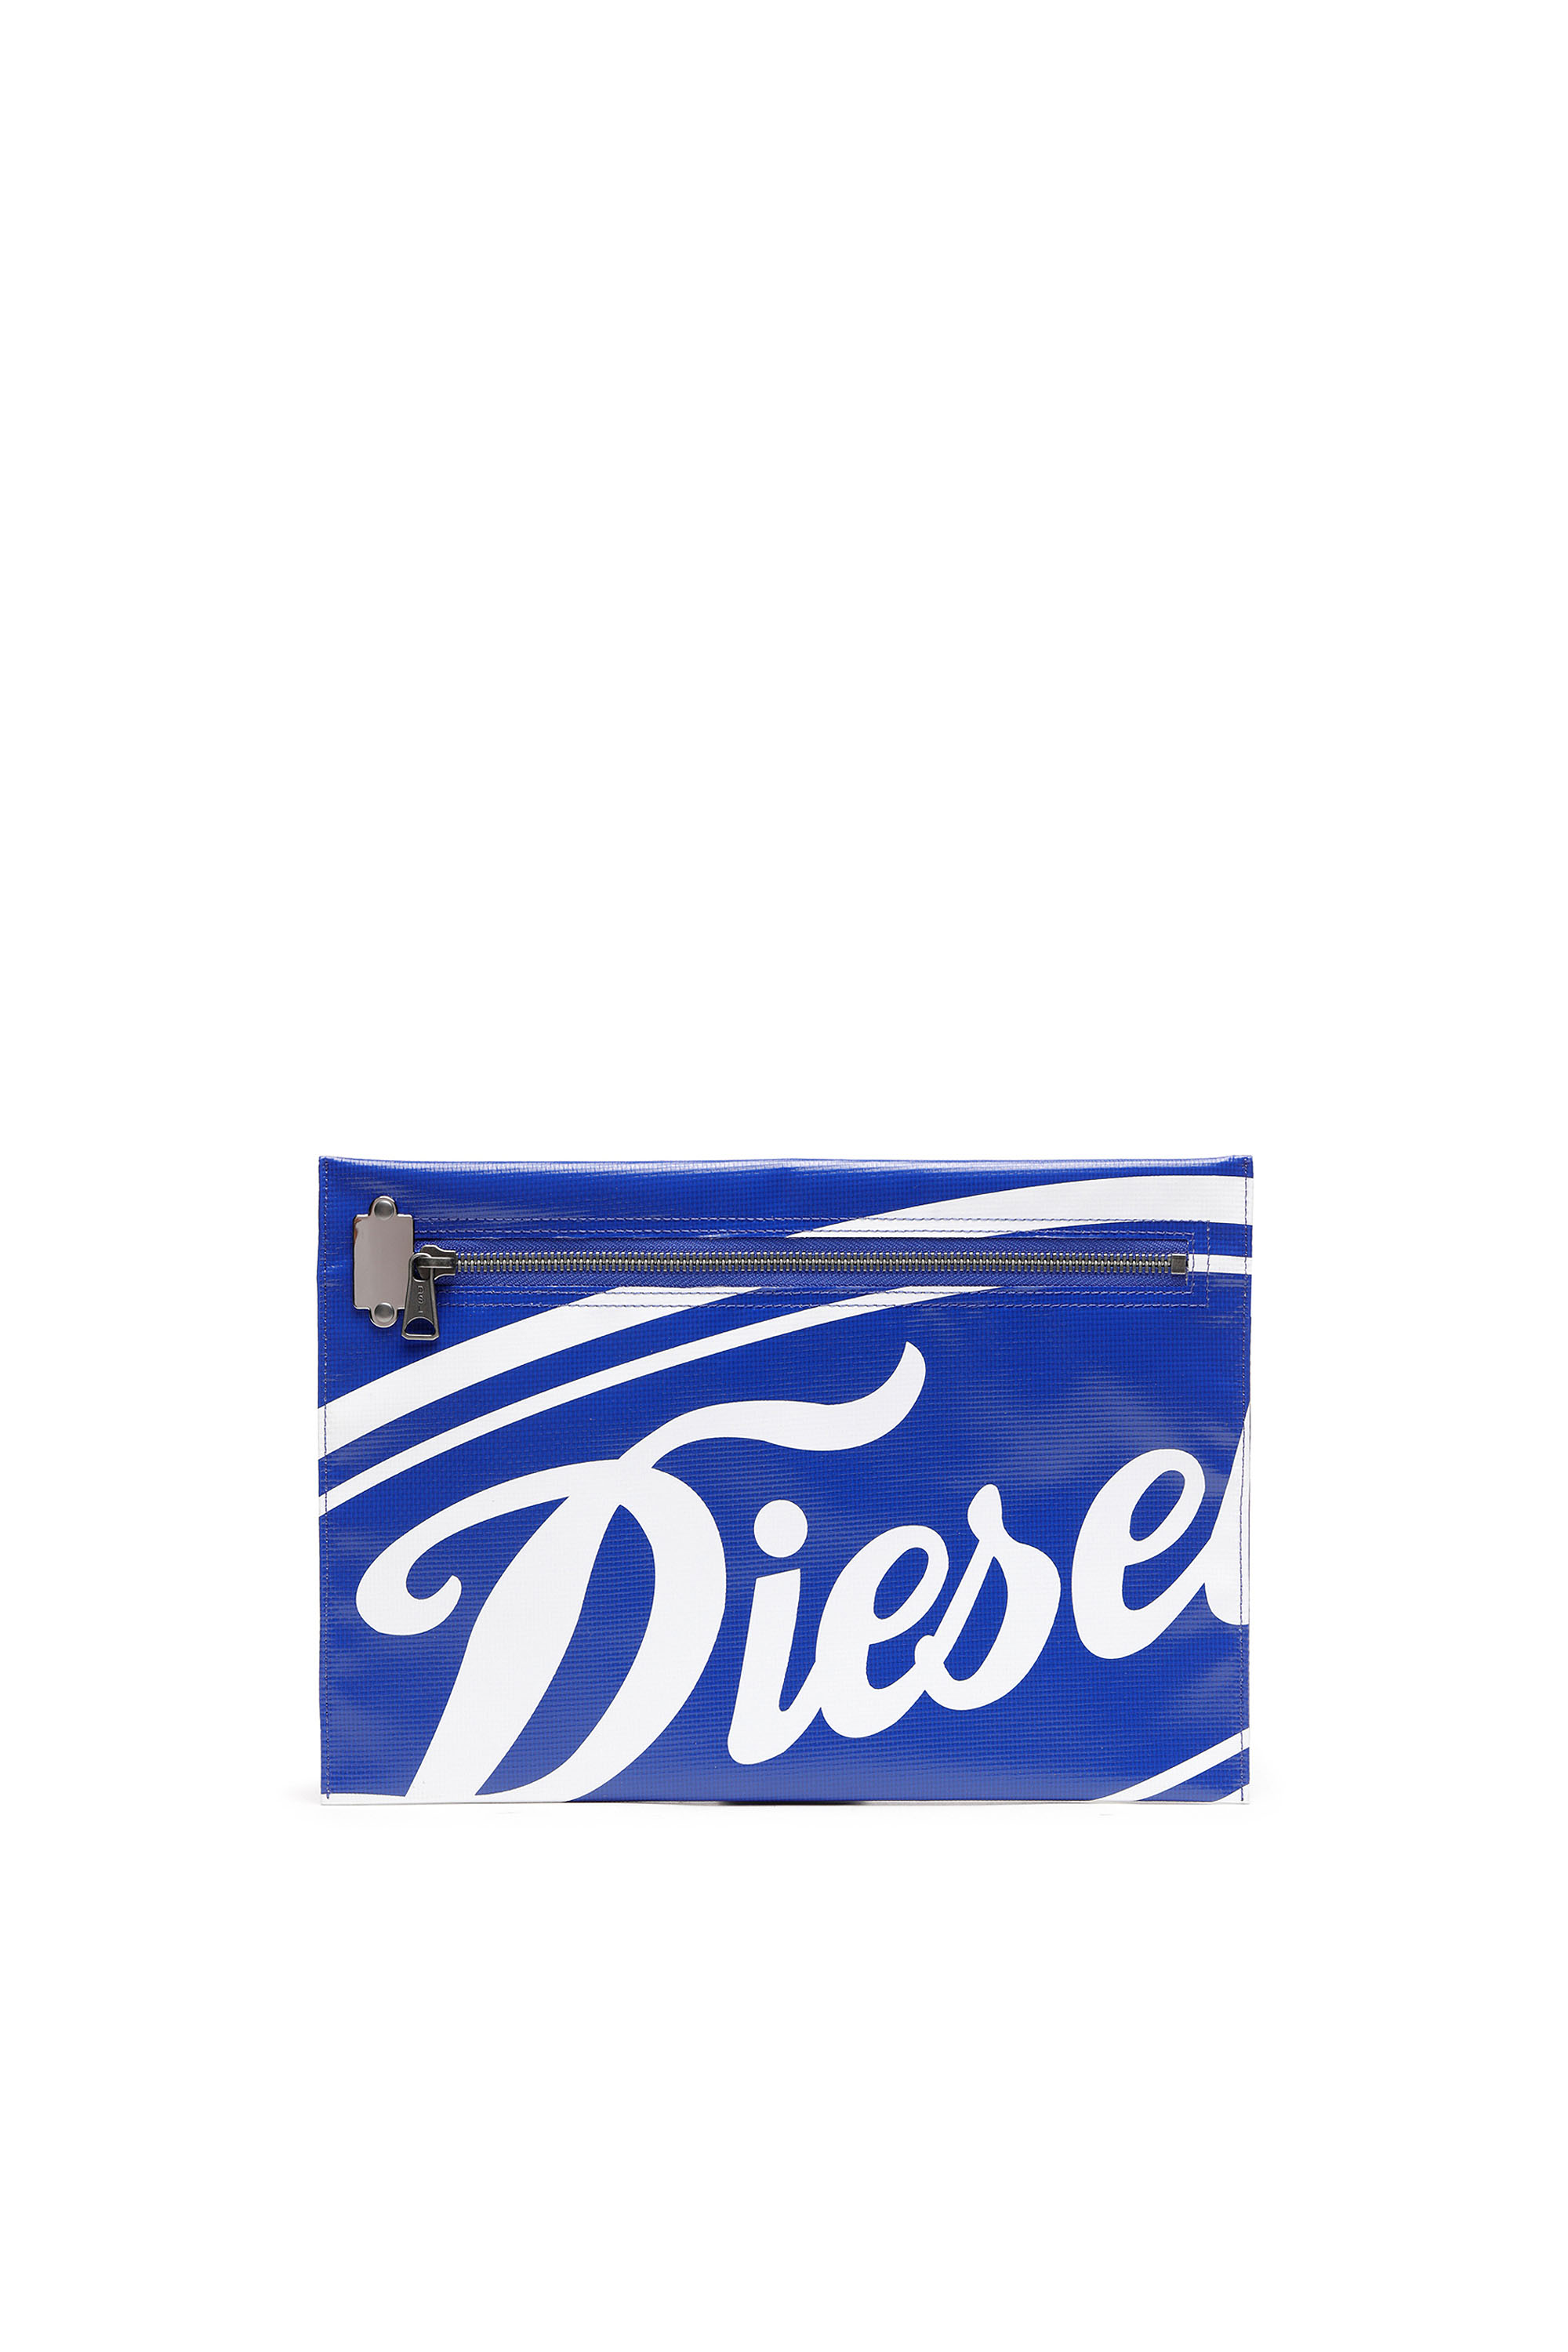 Diesel - SLYW, Blue/White - Image 1